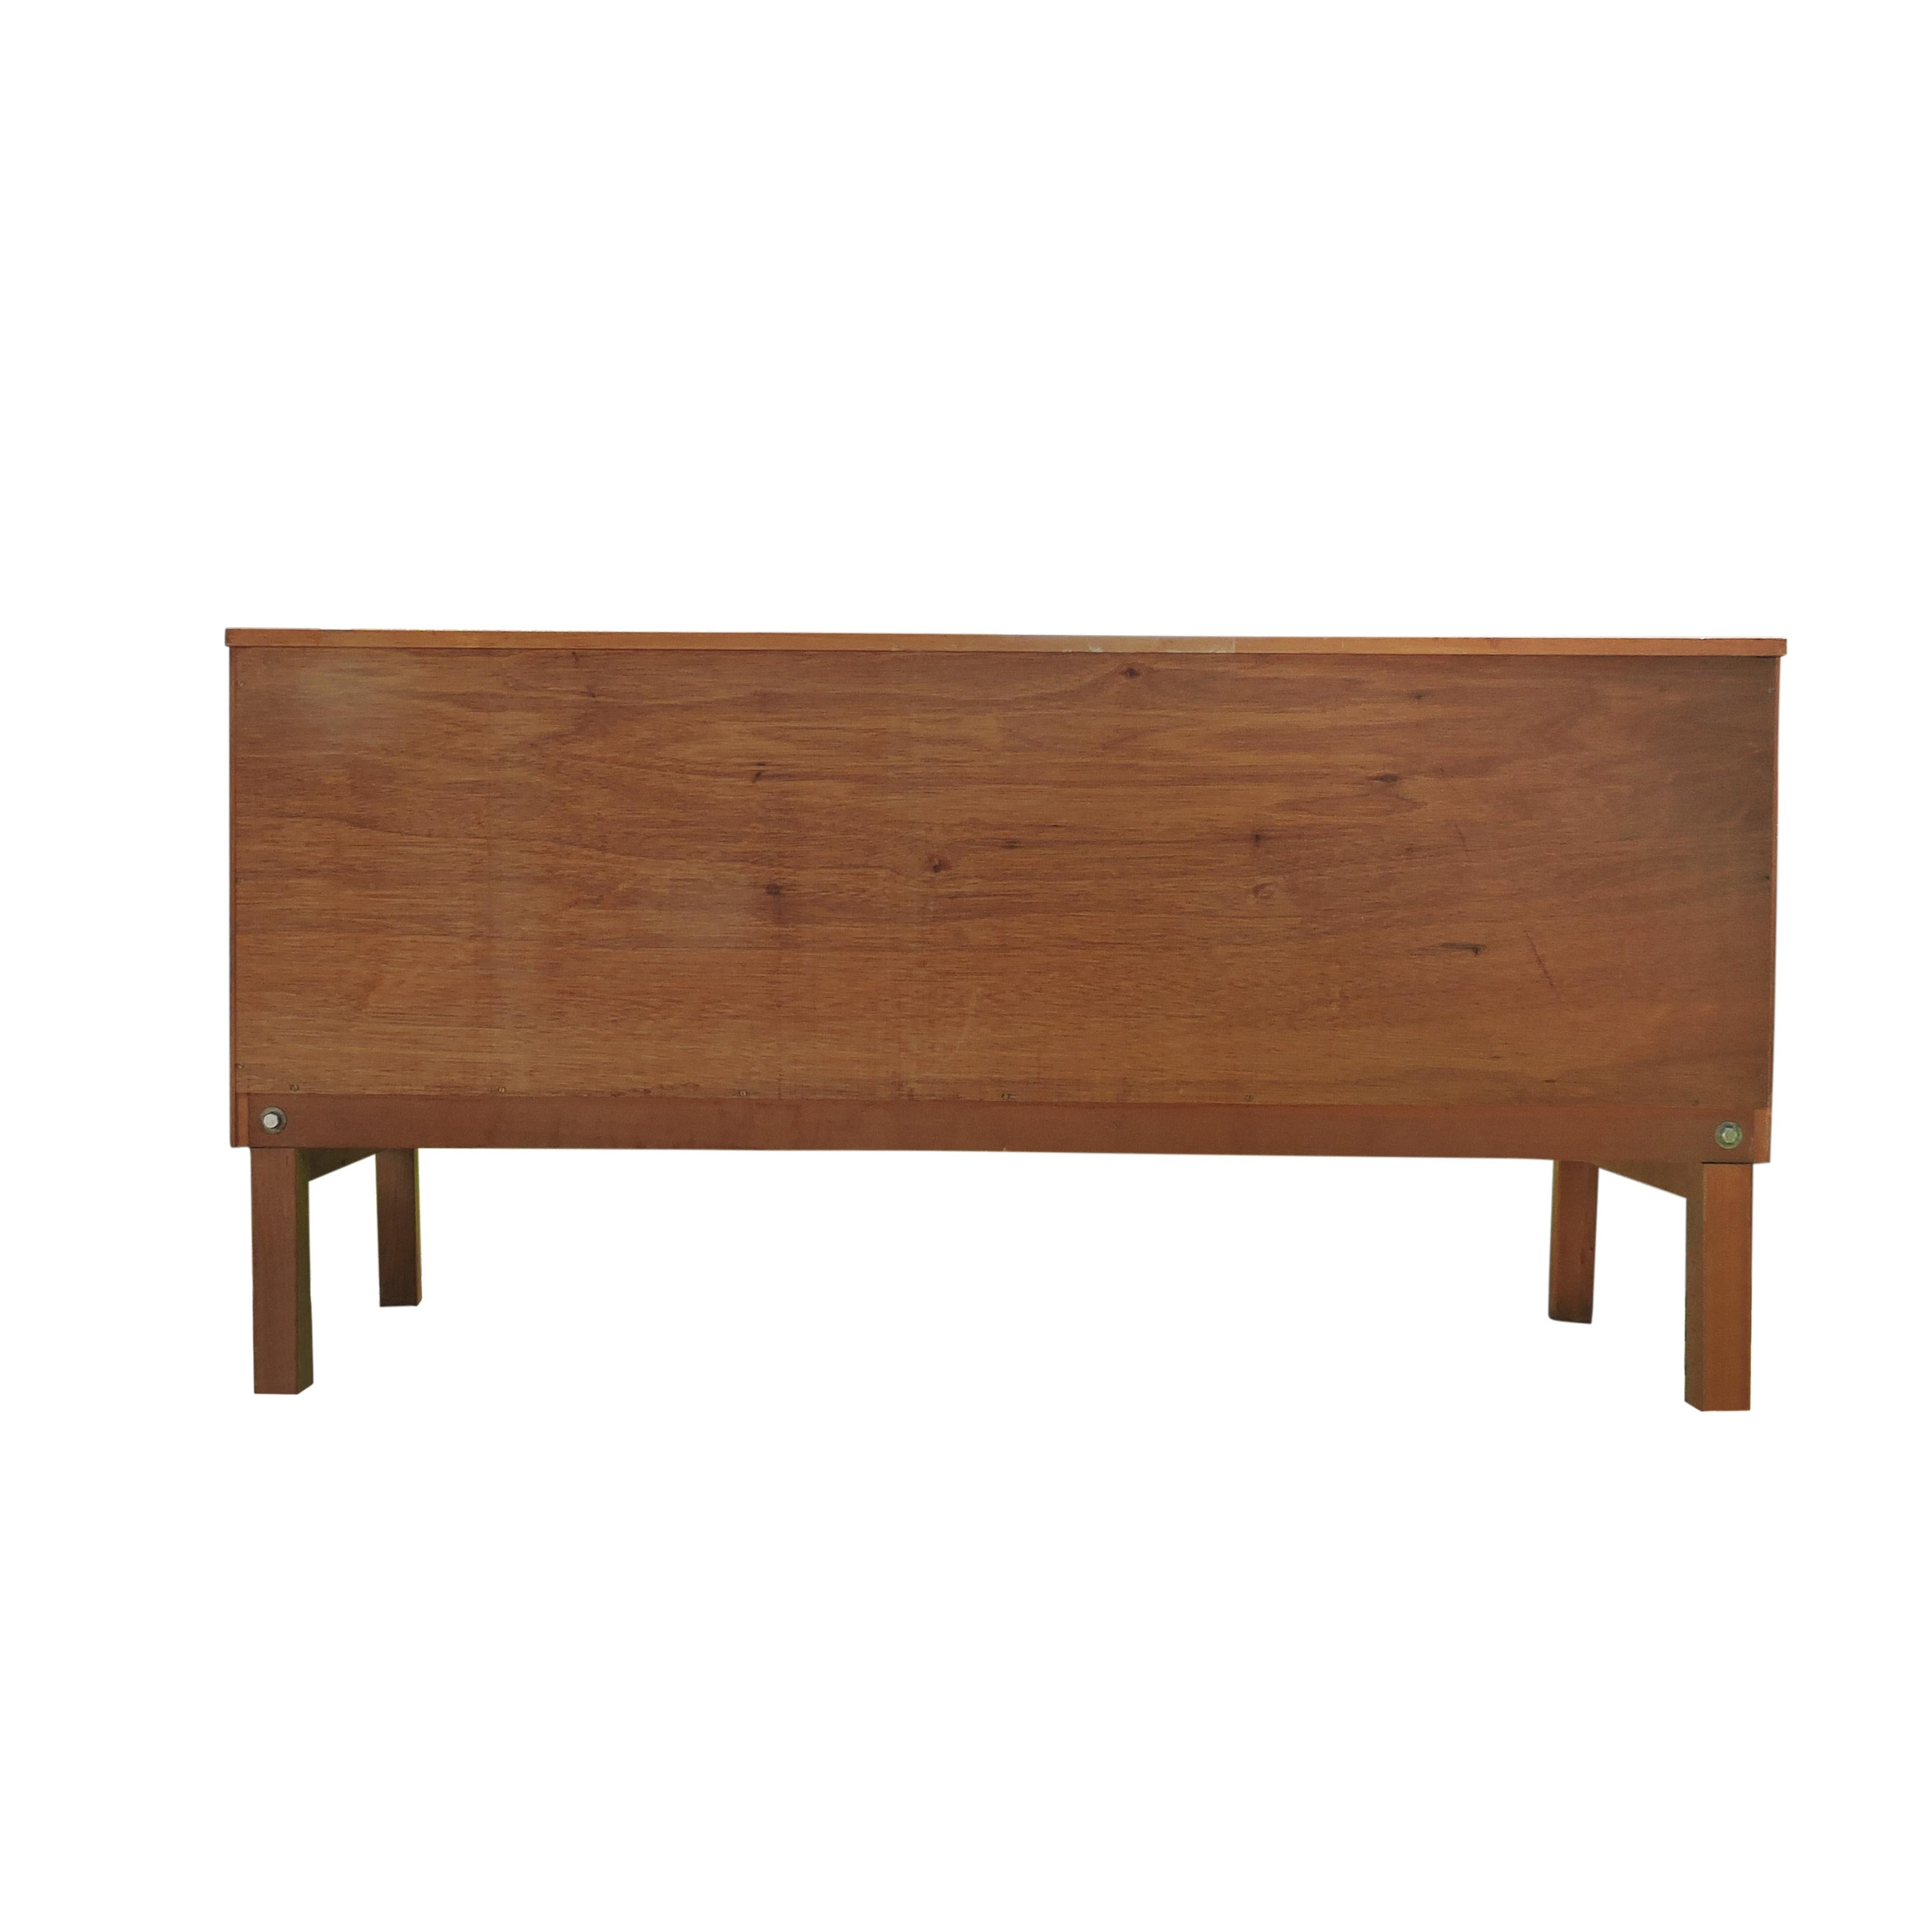 1960s oak sideboard